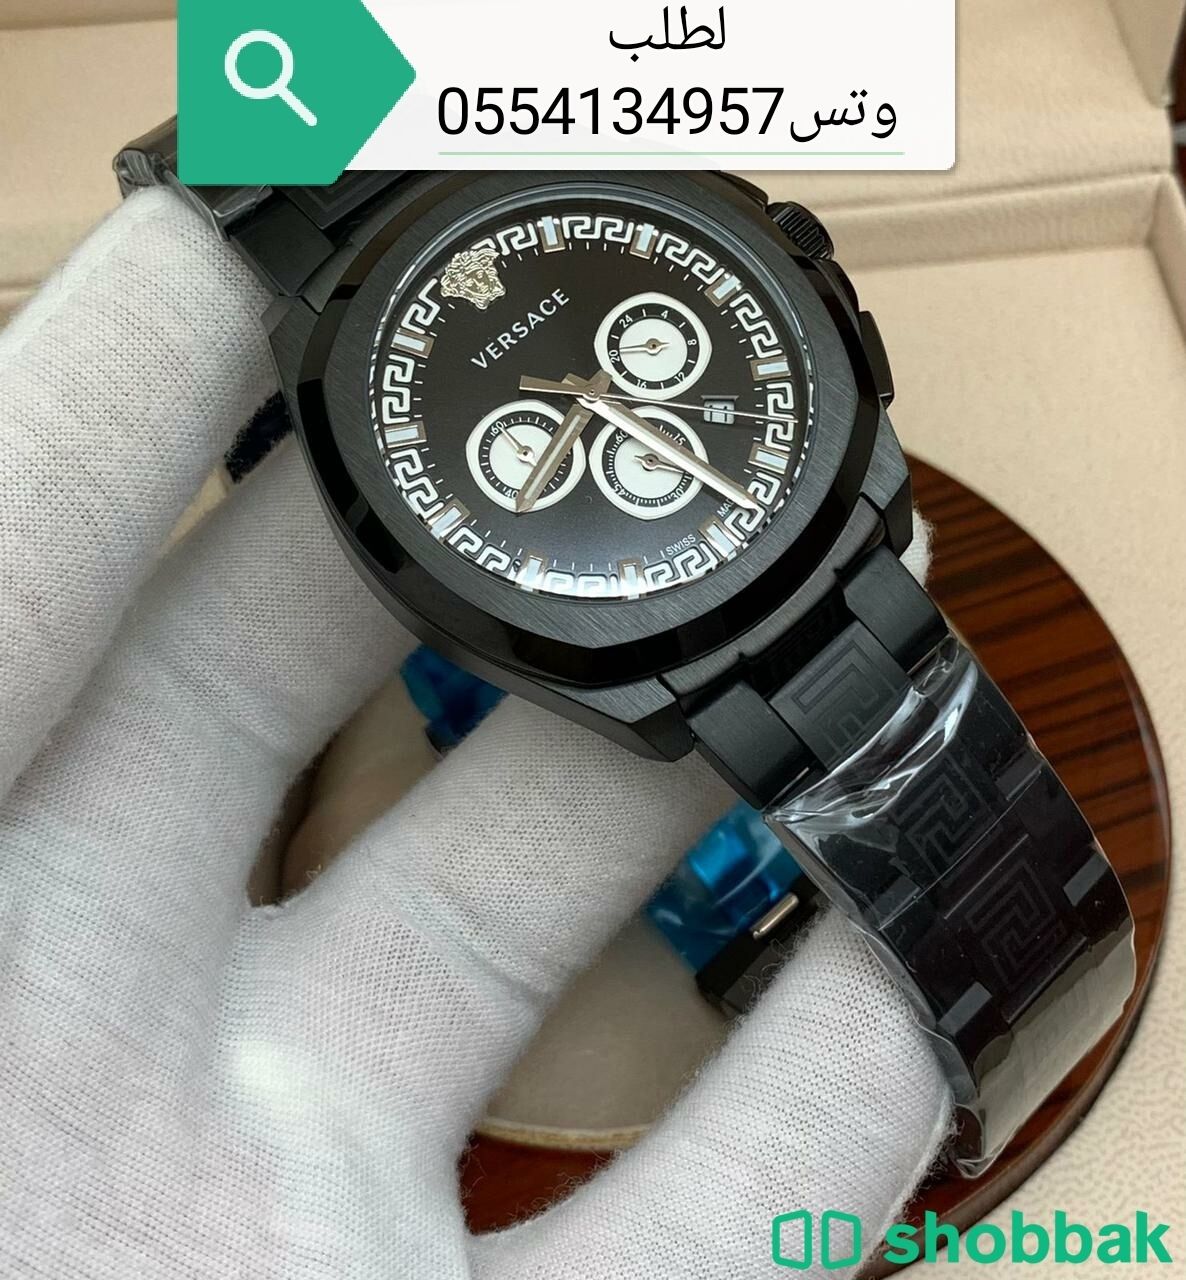 ساعة رجالي فرزاتشي هاي كوالتي 0554134957وتساب Shobbak Saudi Arabia